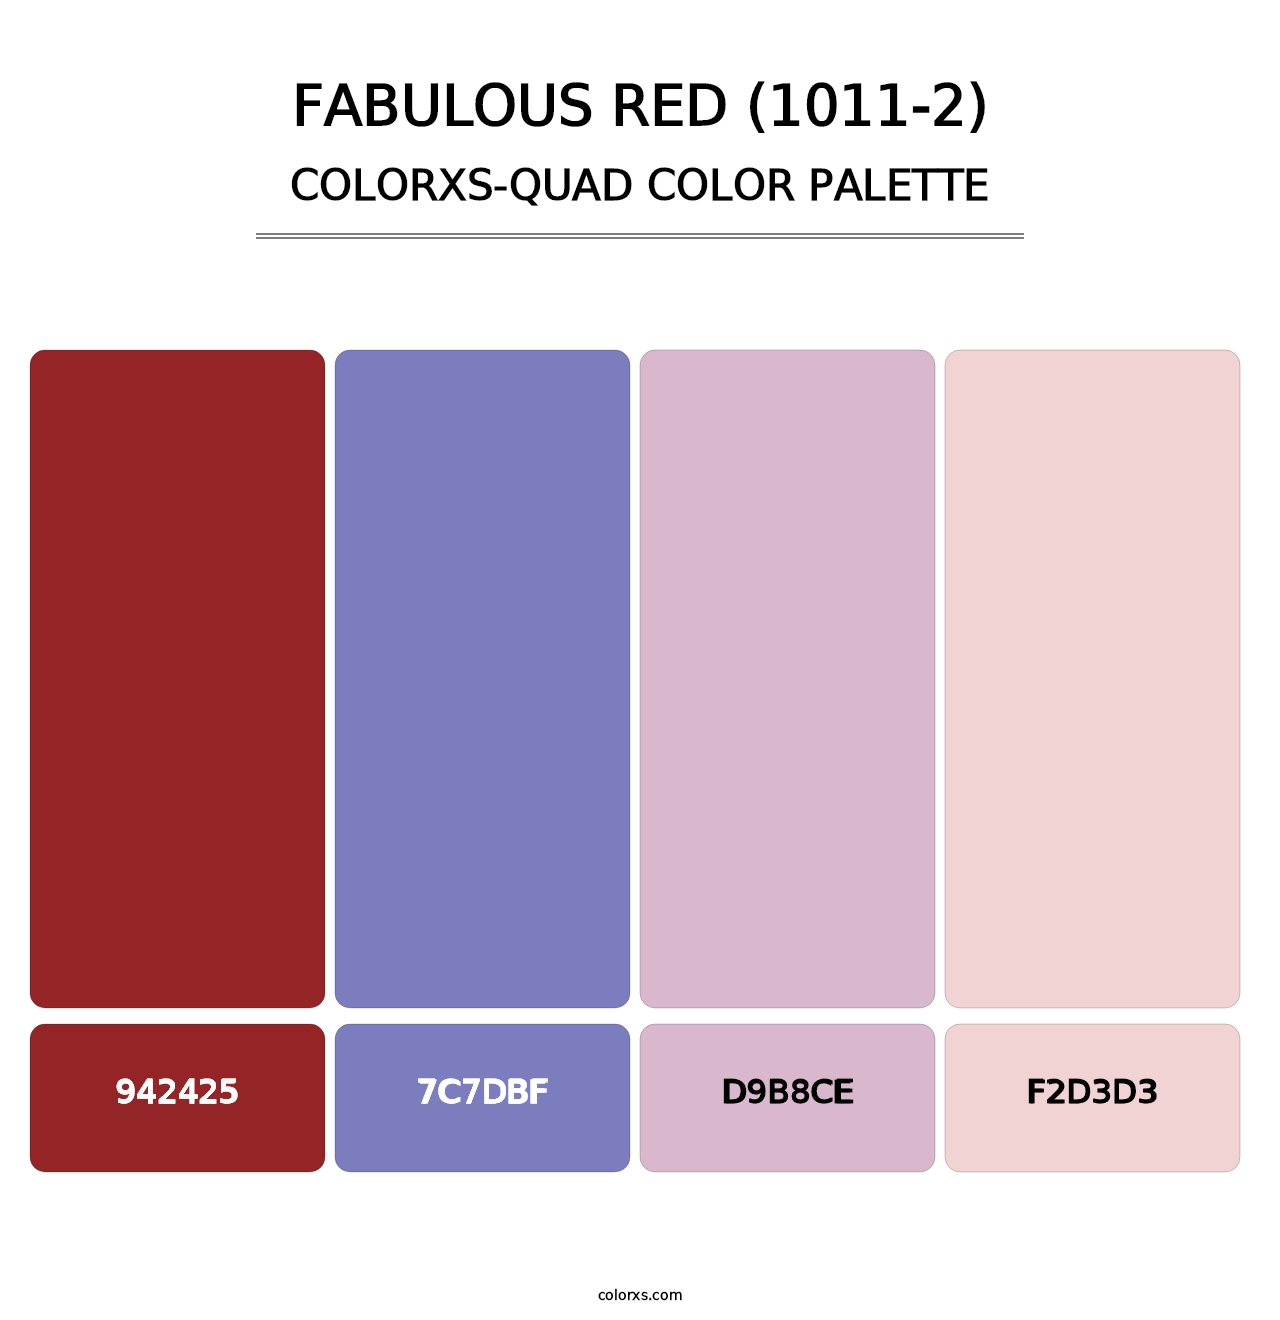 Fabulous Red (1011-2) - Colorxs Quad Palette